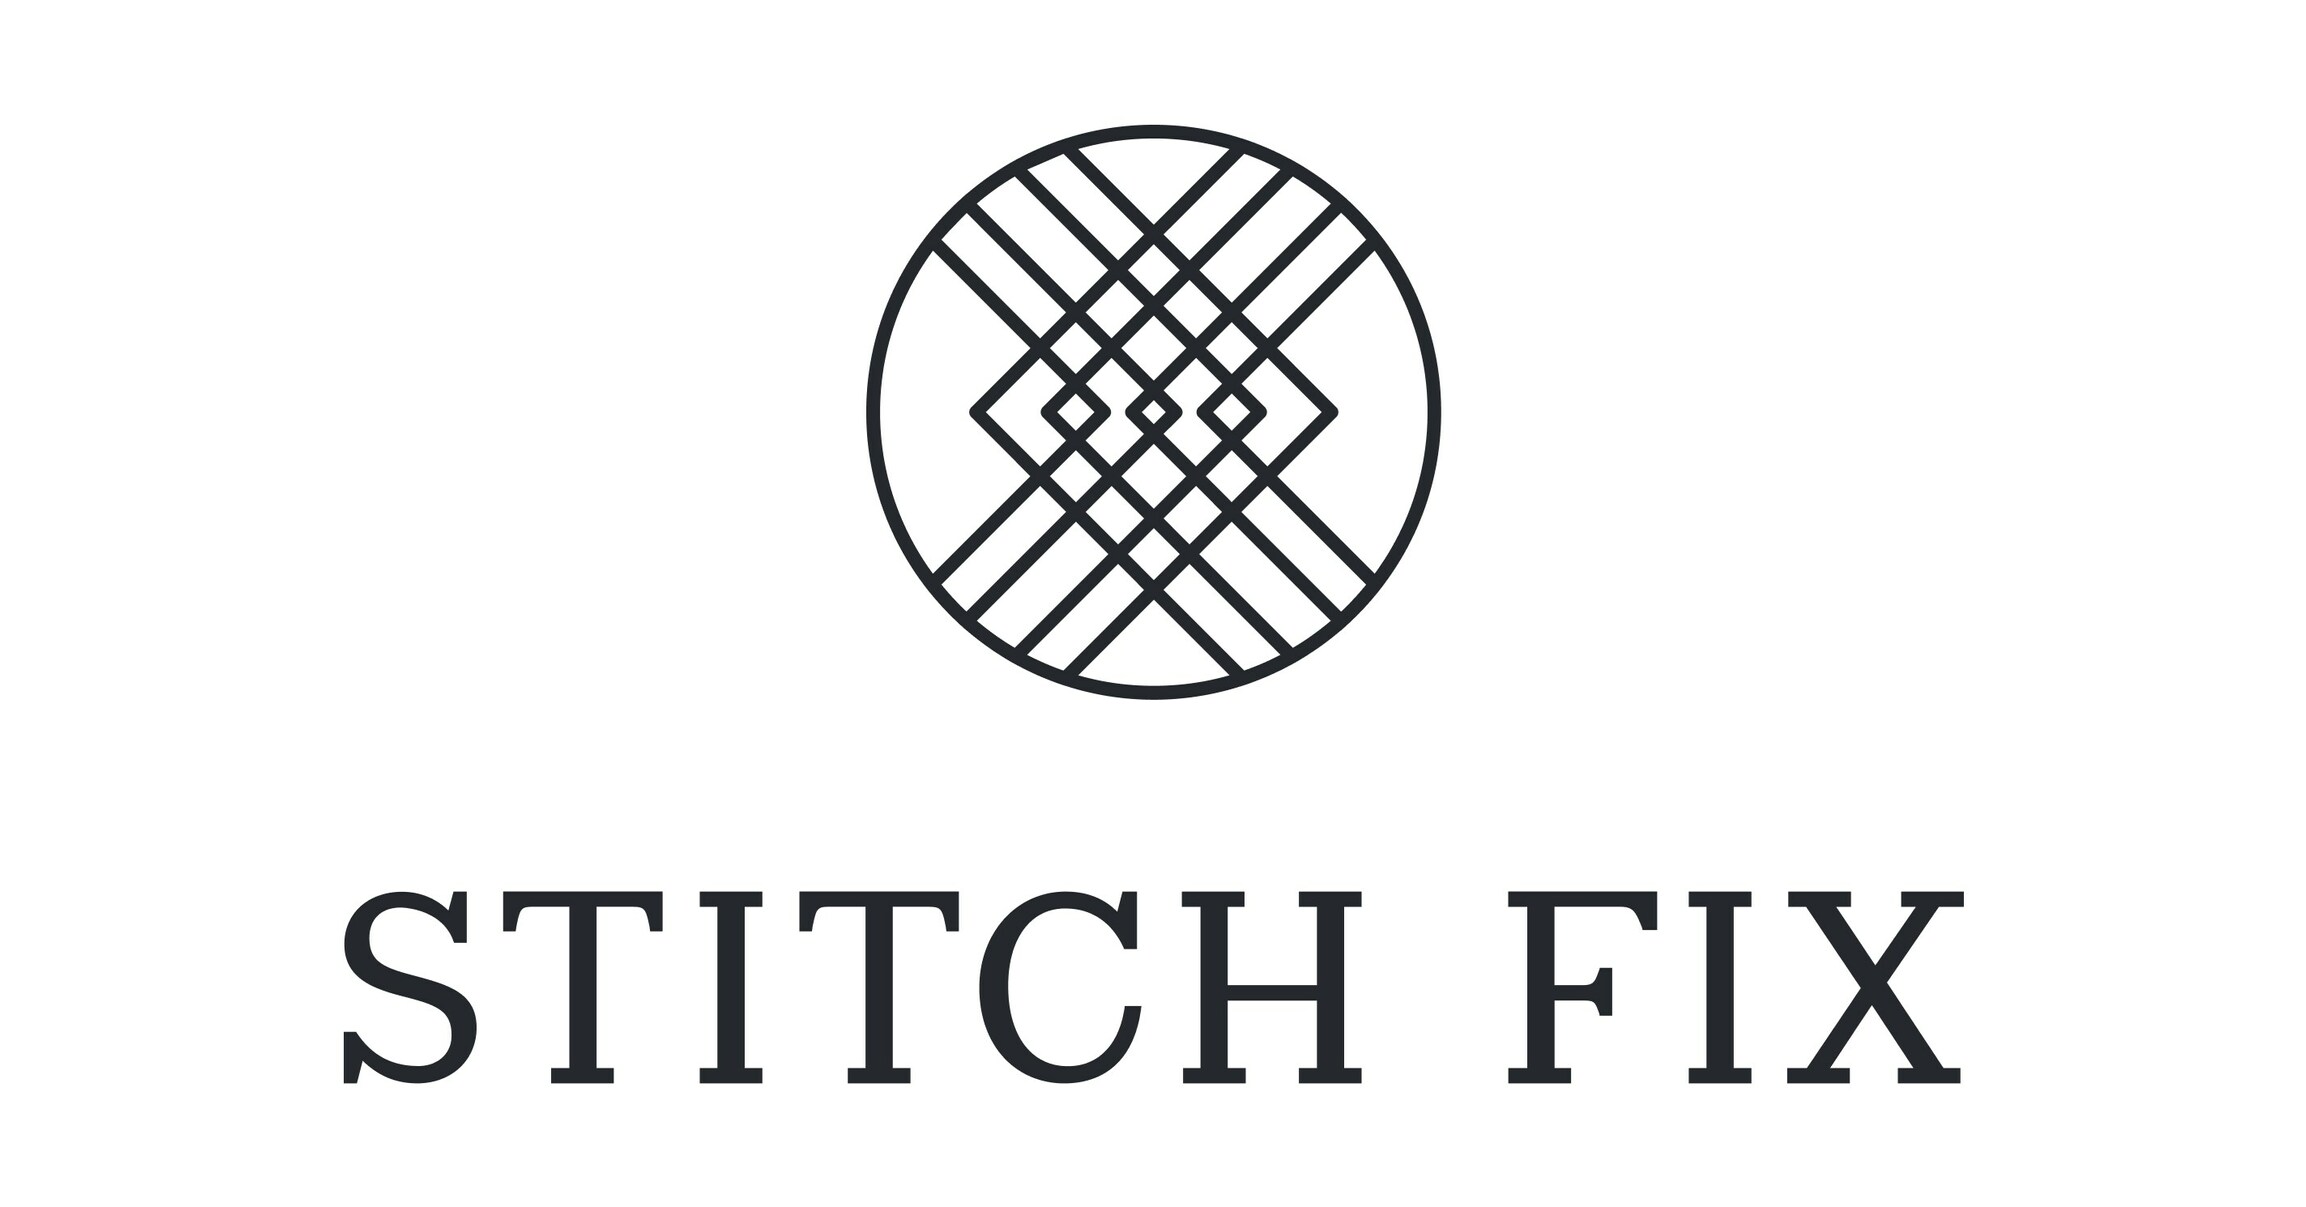 https://mma.prnewswire.com/media/2239405/Stitch_Fix_Logo.jpg?p=facebook